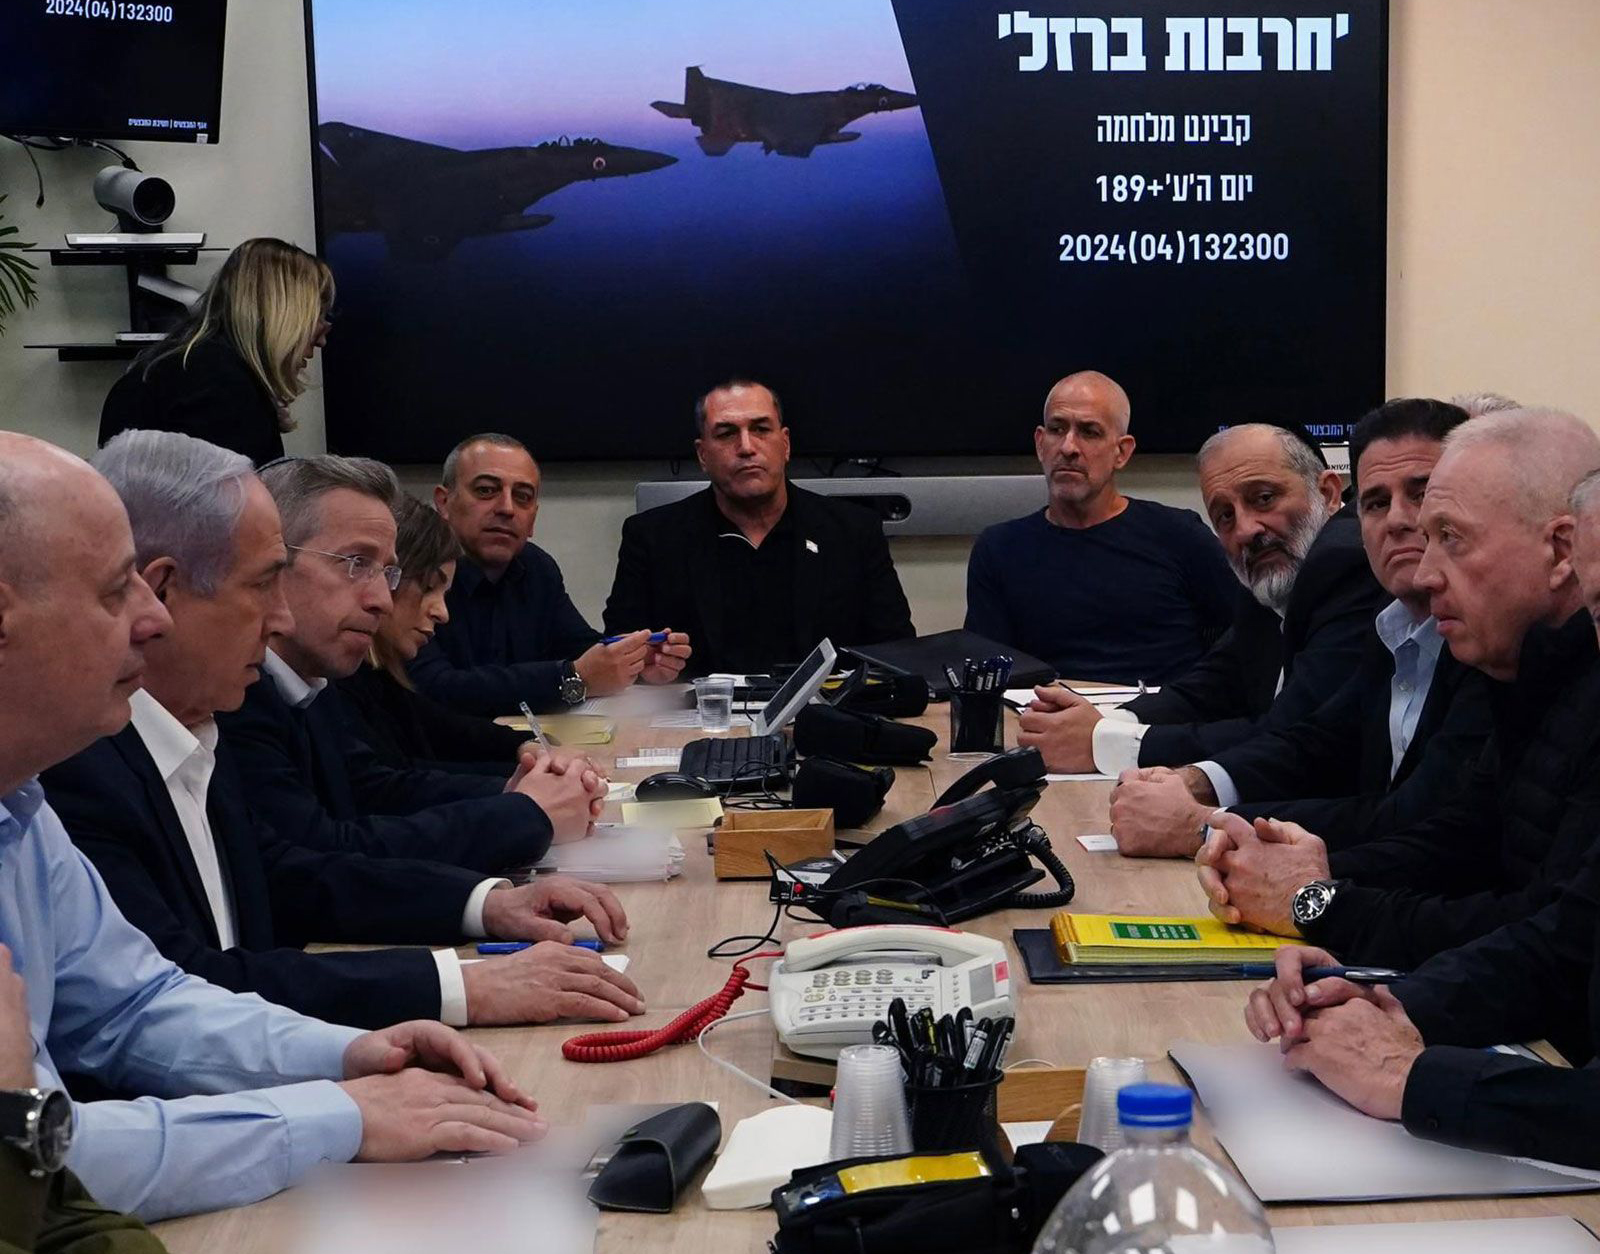 Esta foto, divulgada na manhã de domingo, horário local, mostra o primeiro-ministro israelense, Benjamin Netanyahu, o segundo a partir da esquerda, reunindo-se com membros de seu gabinete de guerra no Ministério da Defesa em Tel Aviv, Israel.  Partes desta imagem foram desfocadas pela fonte.